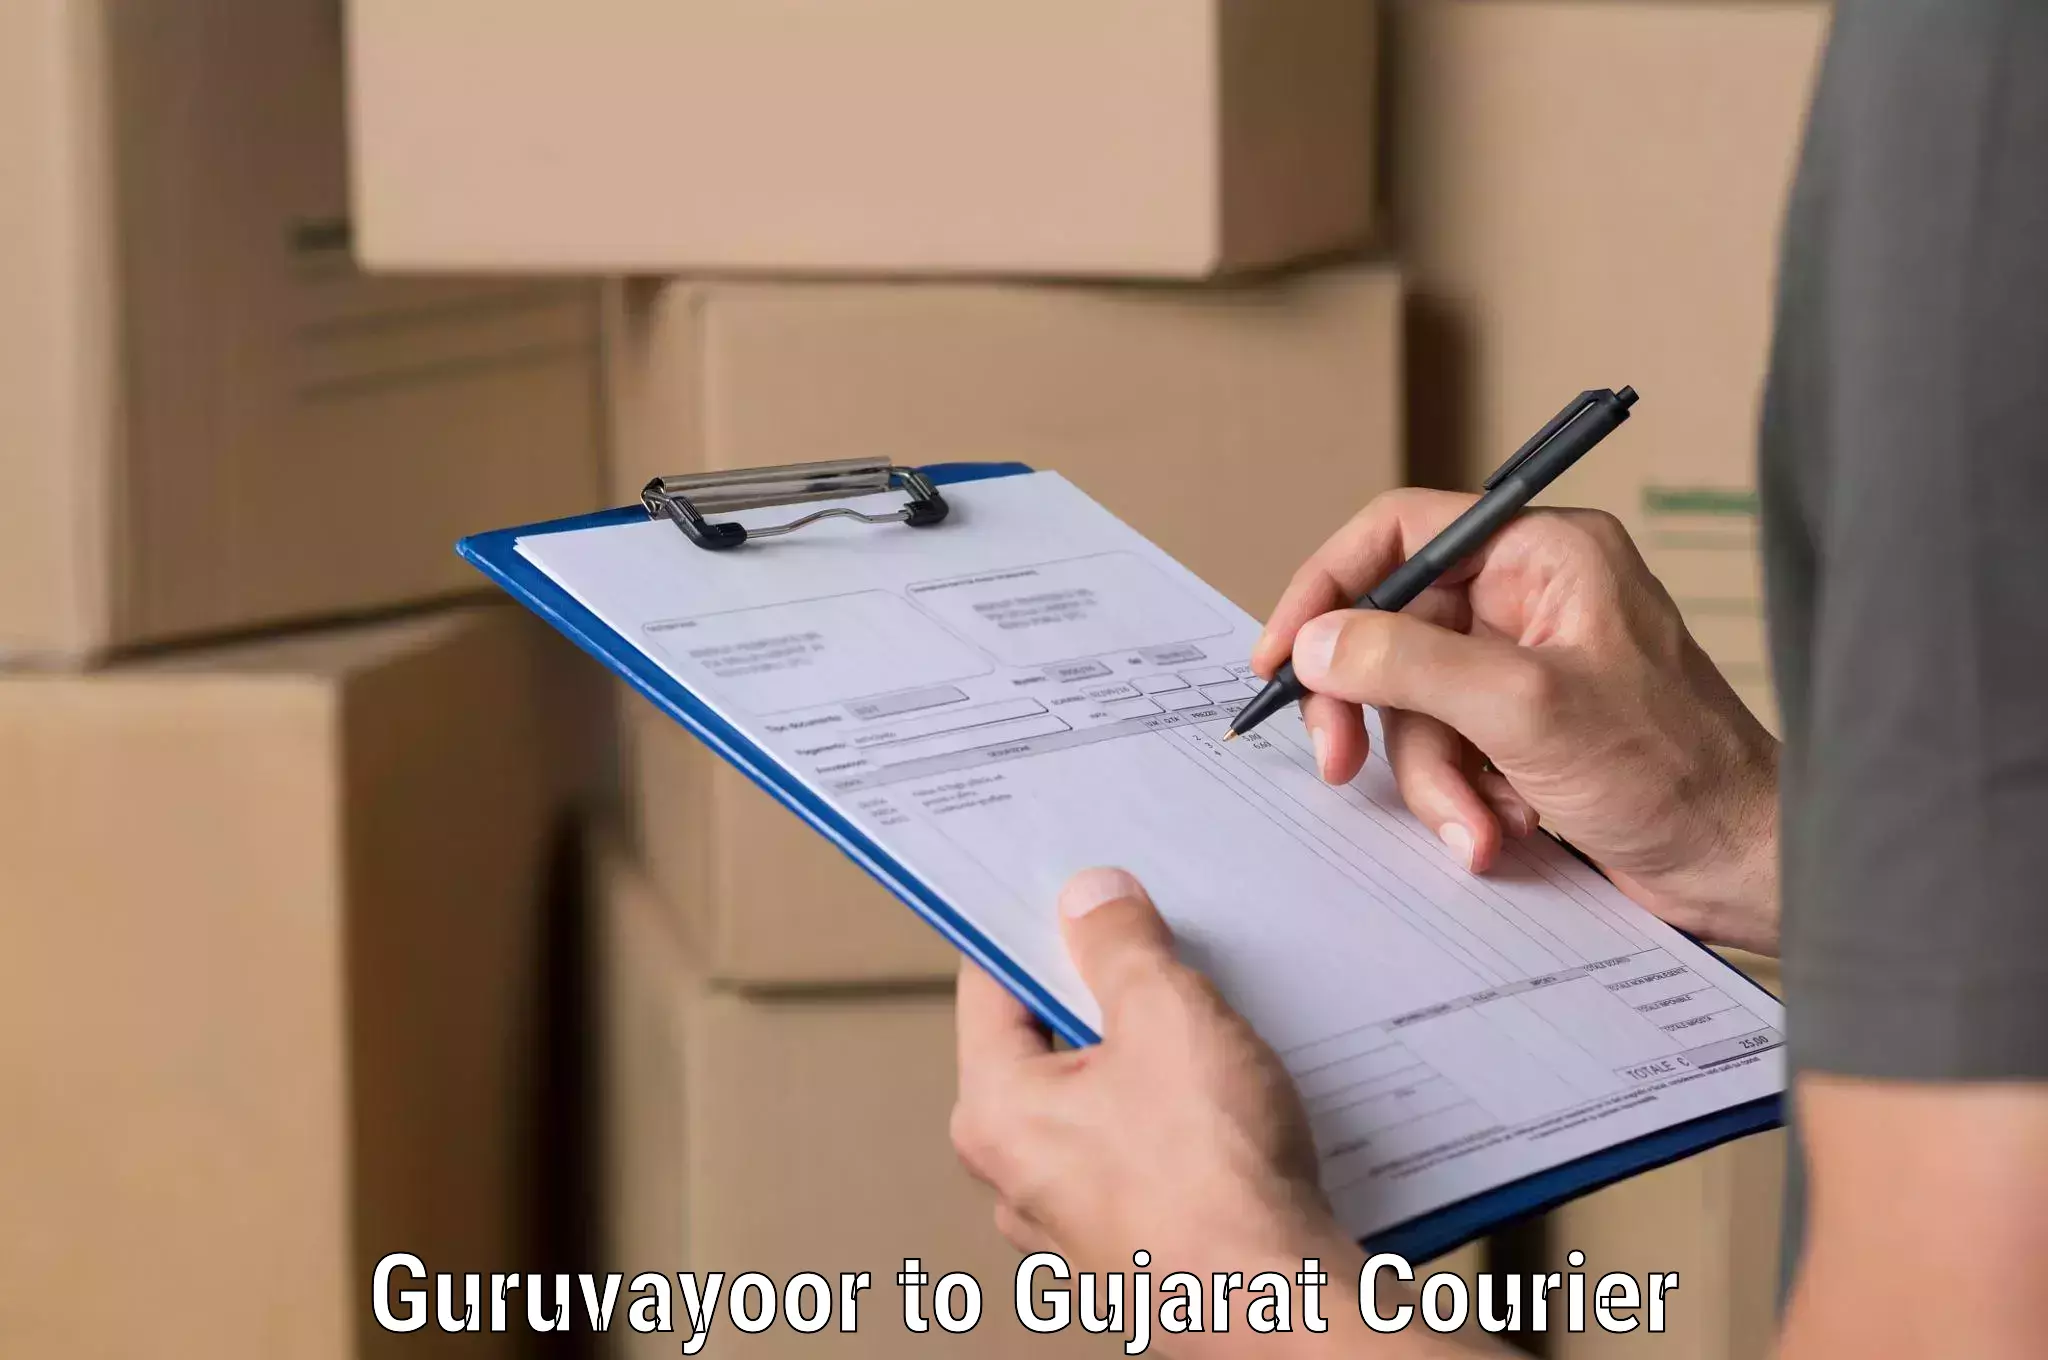 Urgent courier needs Guruvayoor to Gujarat